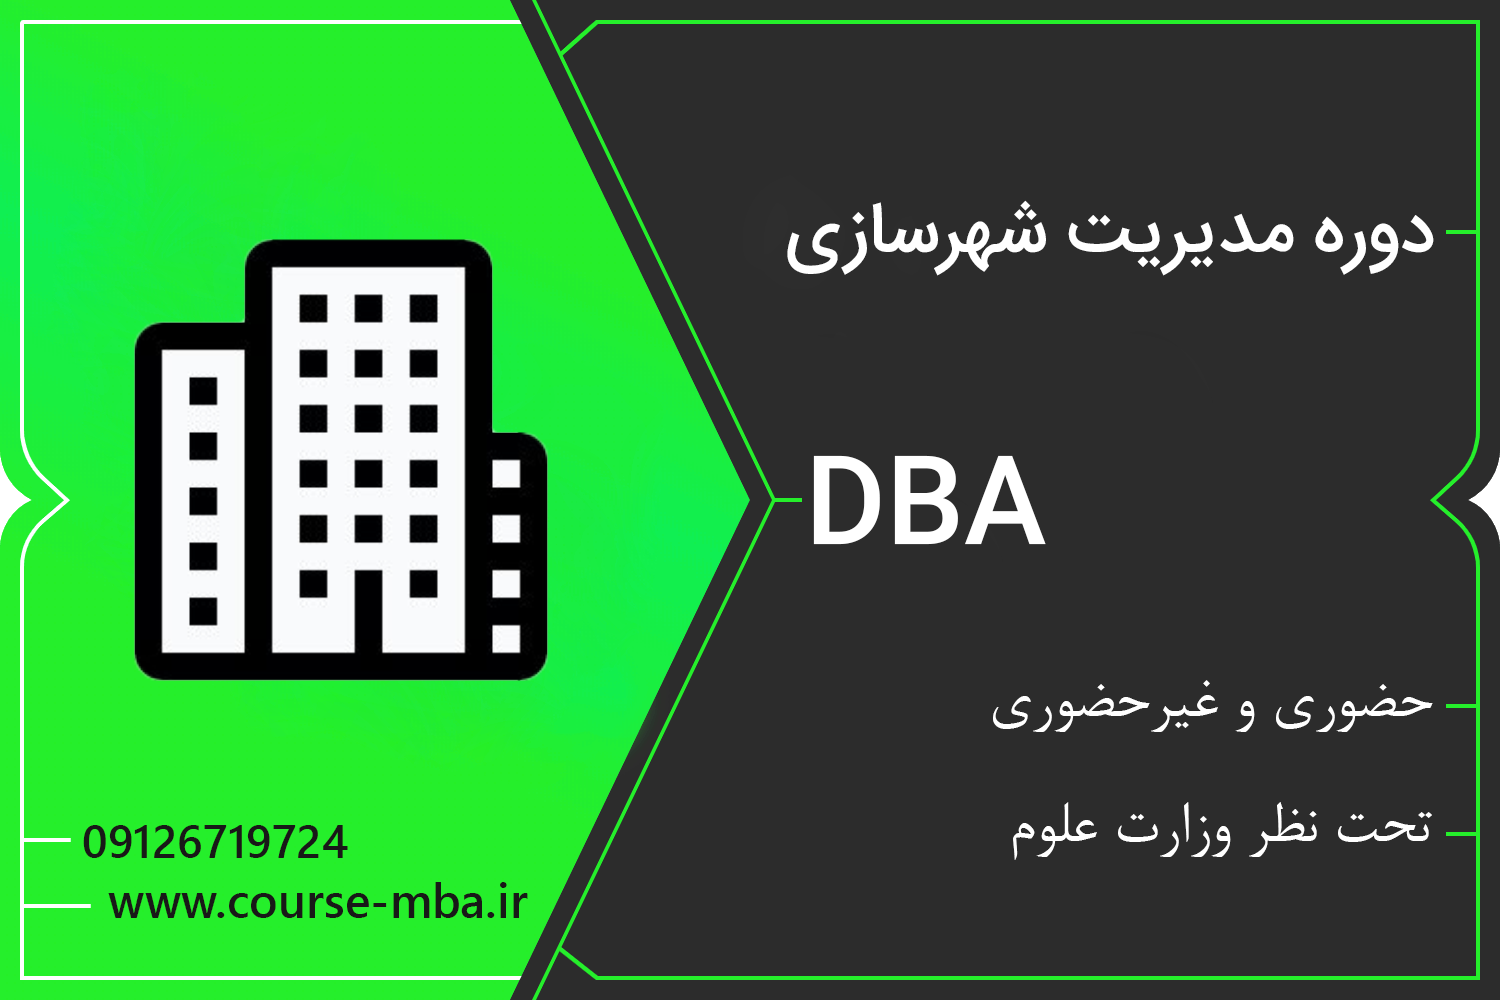 دوره DBA مدیریت شهرسازی | مدرک DBA مدیریت شهرسازی